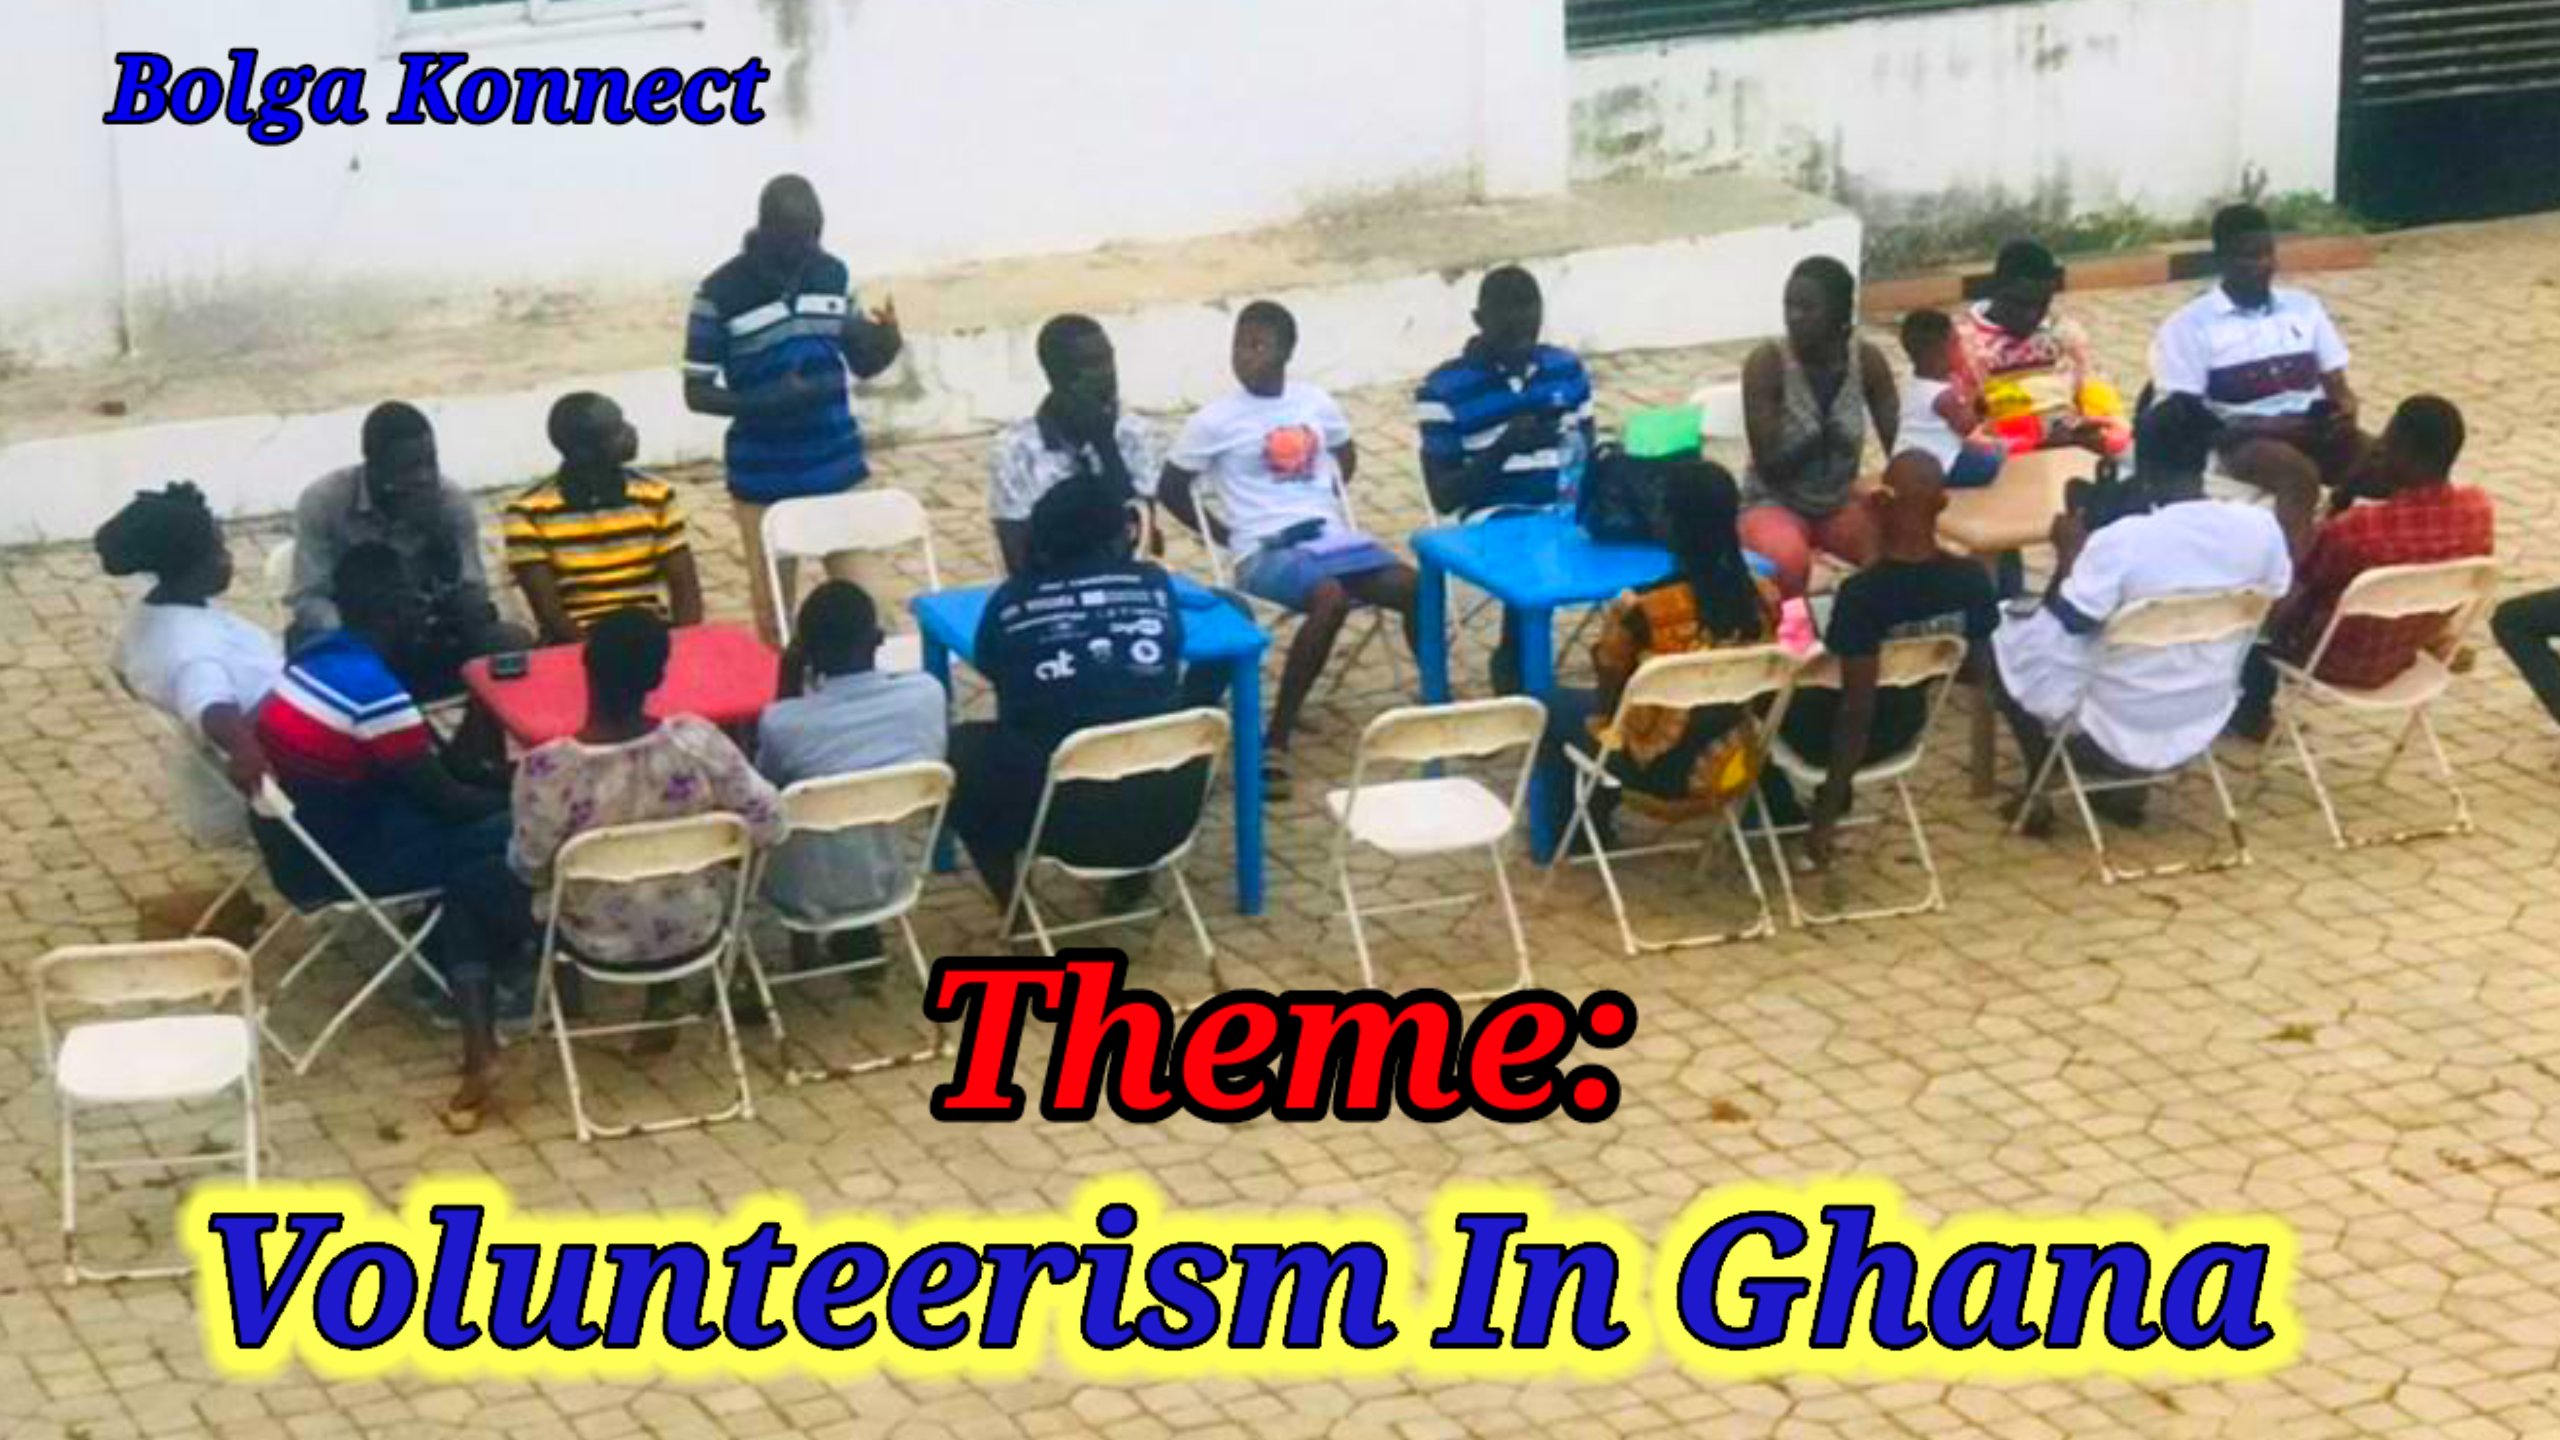 Bolga Konnect Empowers Members To Dedicated Volunteerism in Ghana